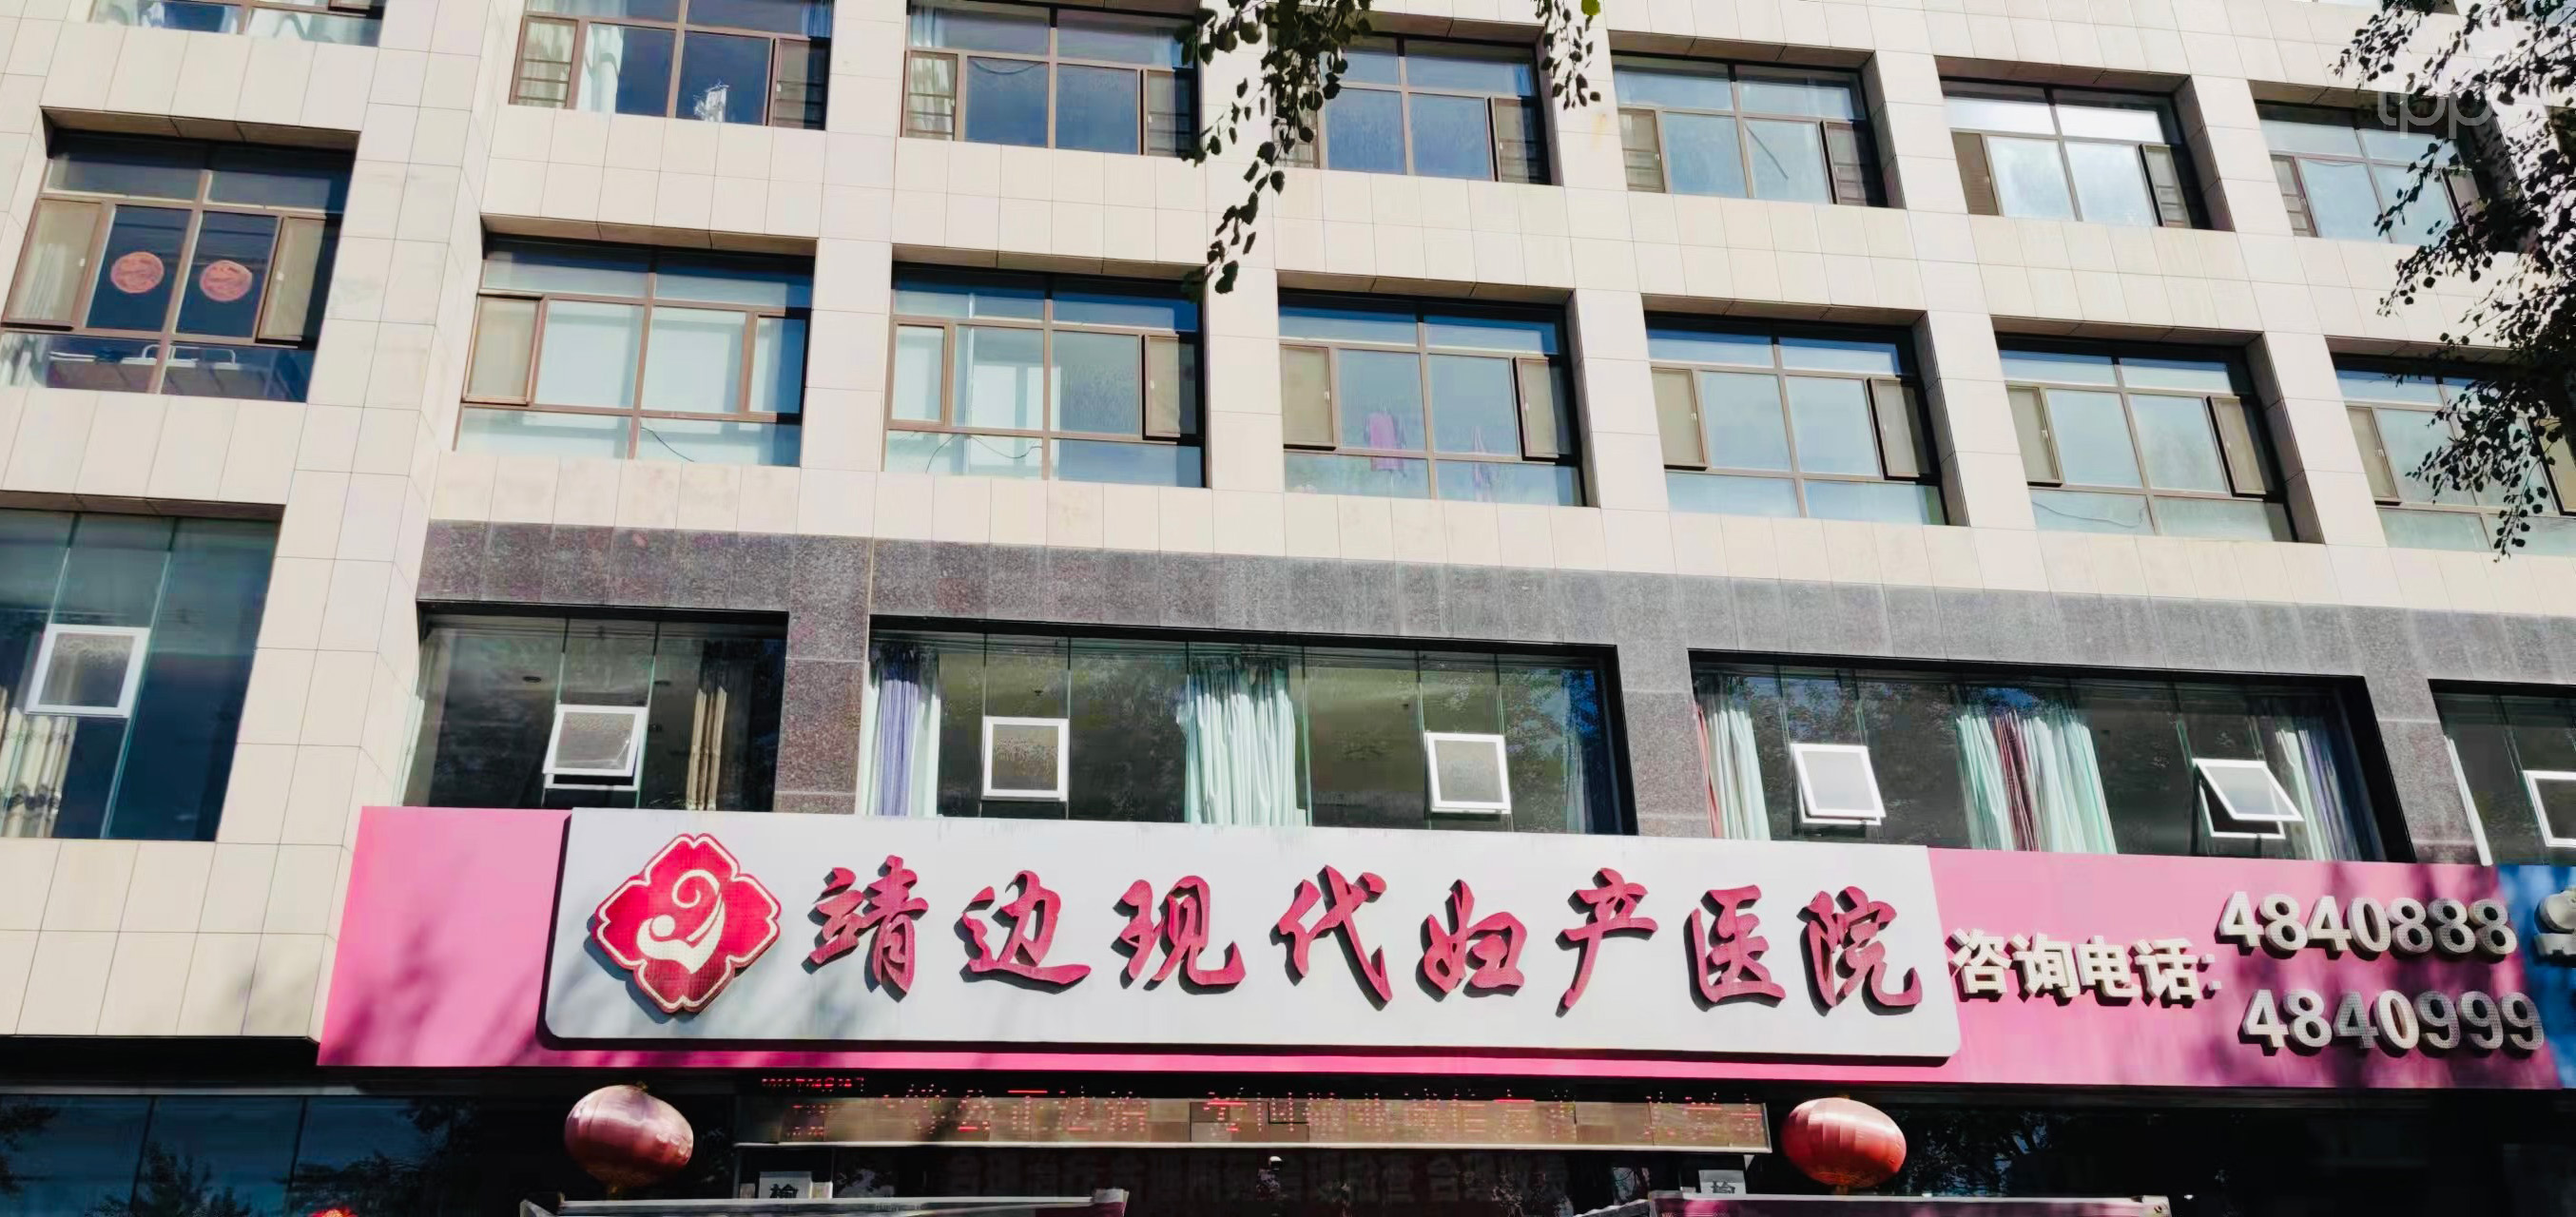 东方妇科医院健康教育校园公益行走进长江大学艺术学院